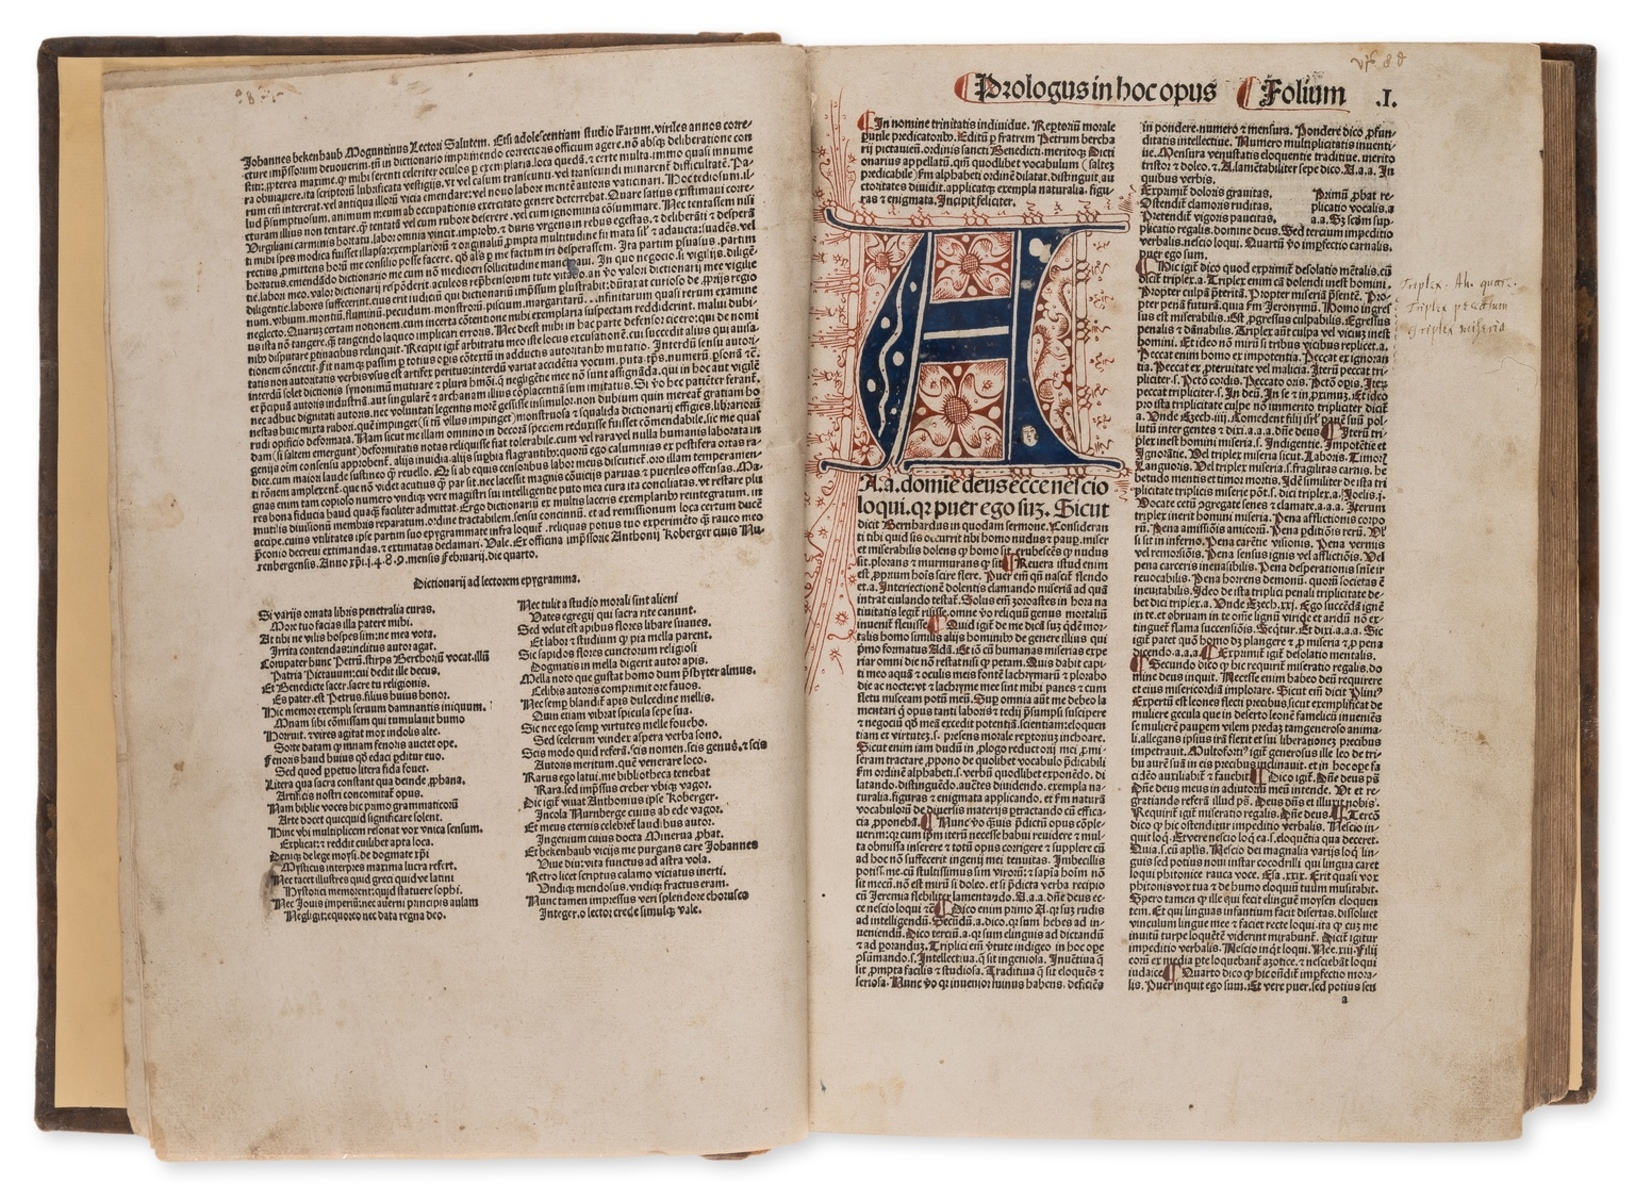 Berchorius (Petrus) Repertorium morale, 3 vol., rare at auction, [Nuremberg], Anton Koberger, 1489.